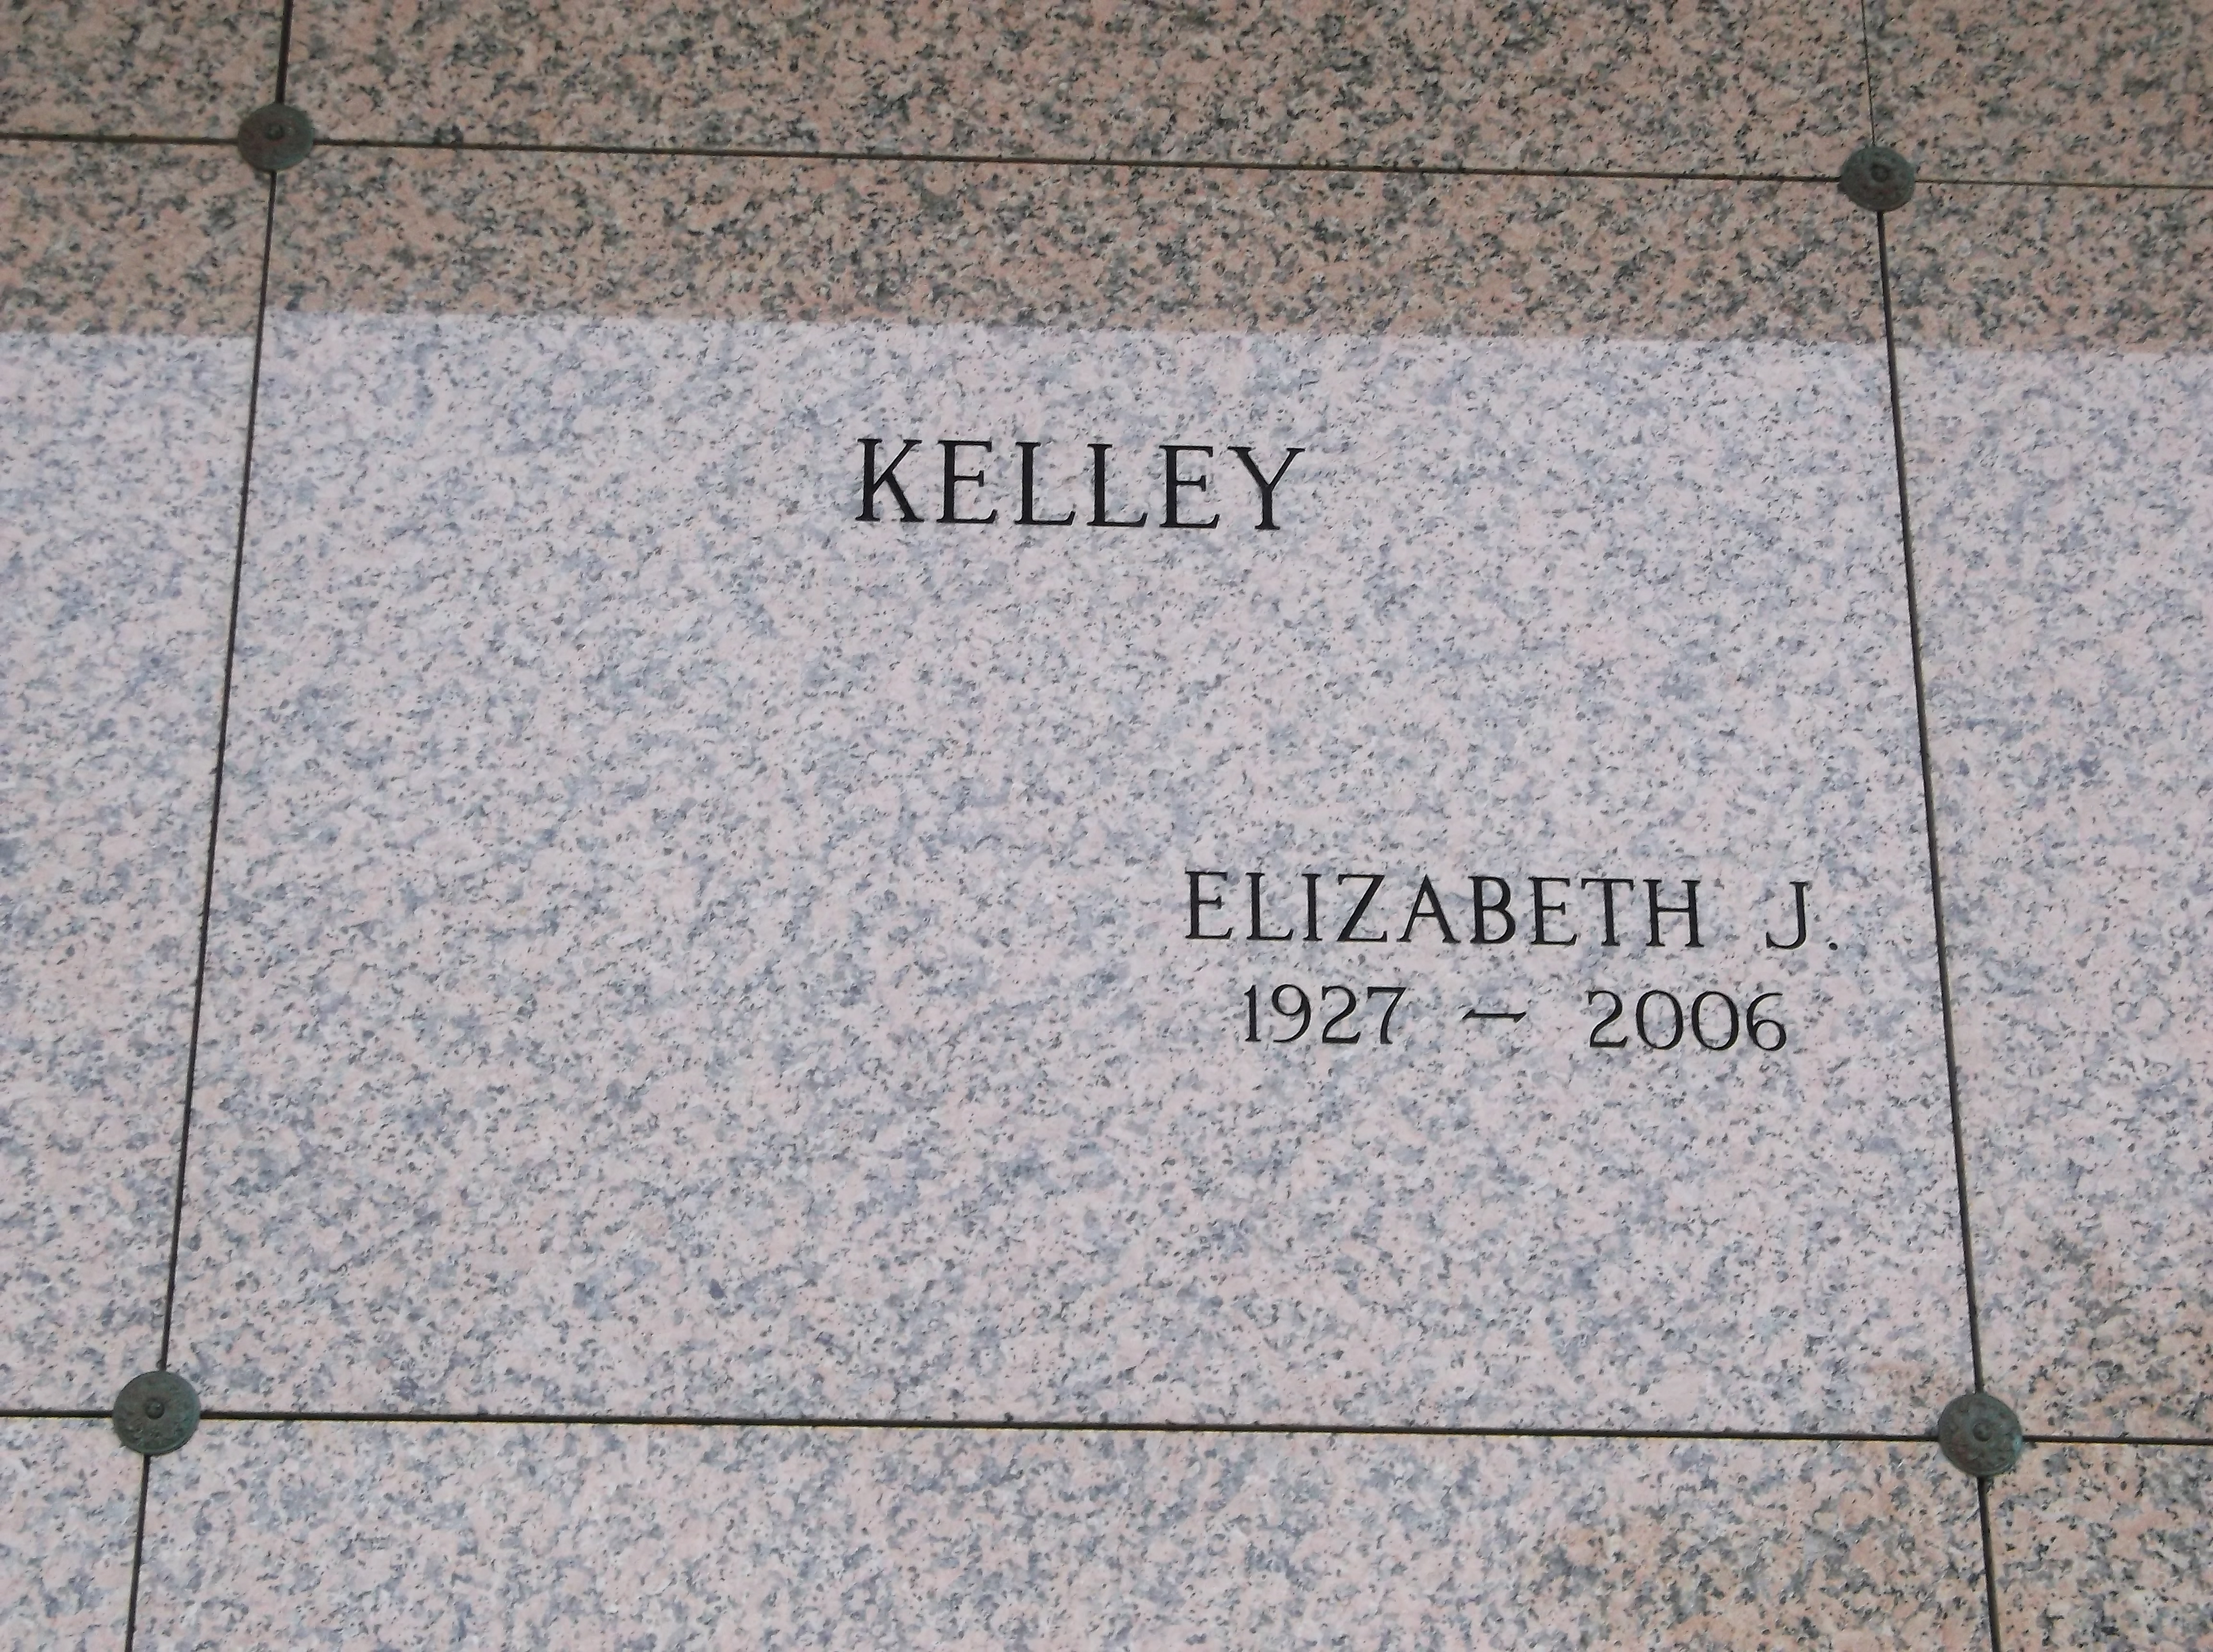 Elizabeth J Kelley